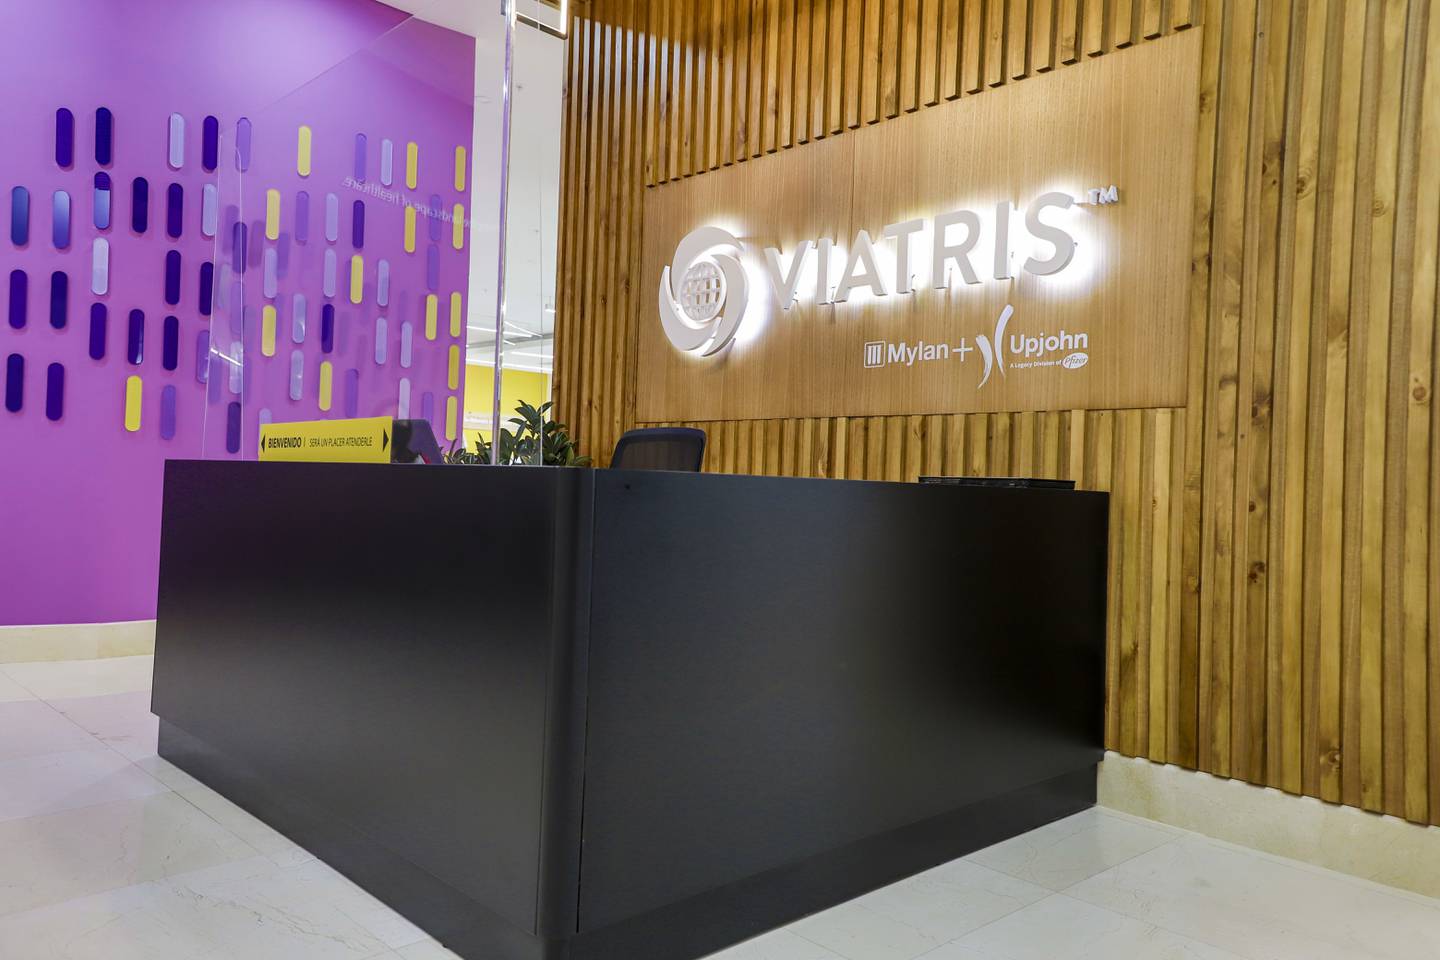 La empresa Viatris abrió, este 4 de marzo, operaciones comerciales en Costa Rica. La compañía es la sexta en el mundo en fabricación y distribución de medicamentos. Foto: Cortesía Viatris.